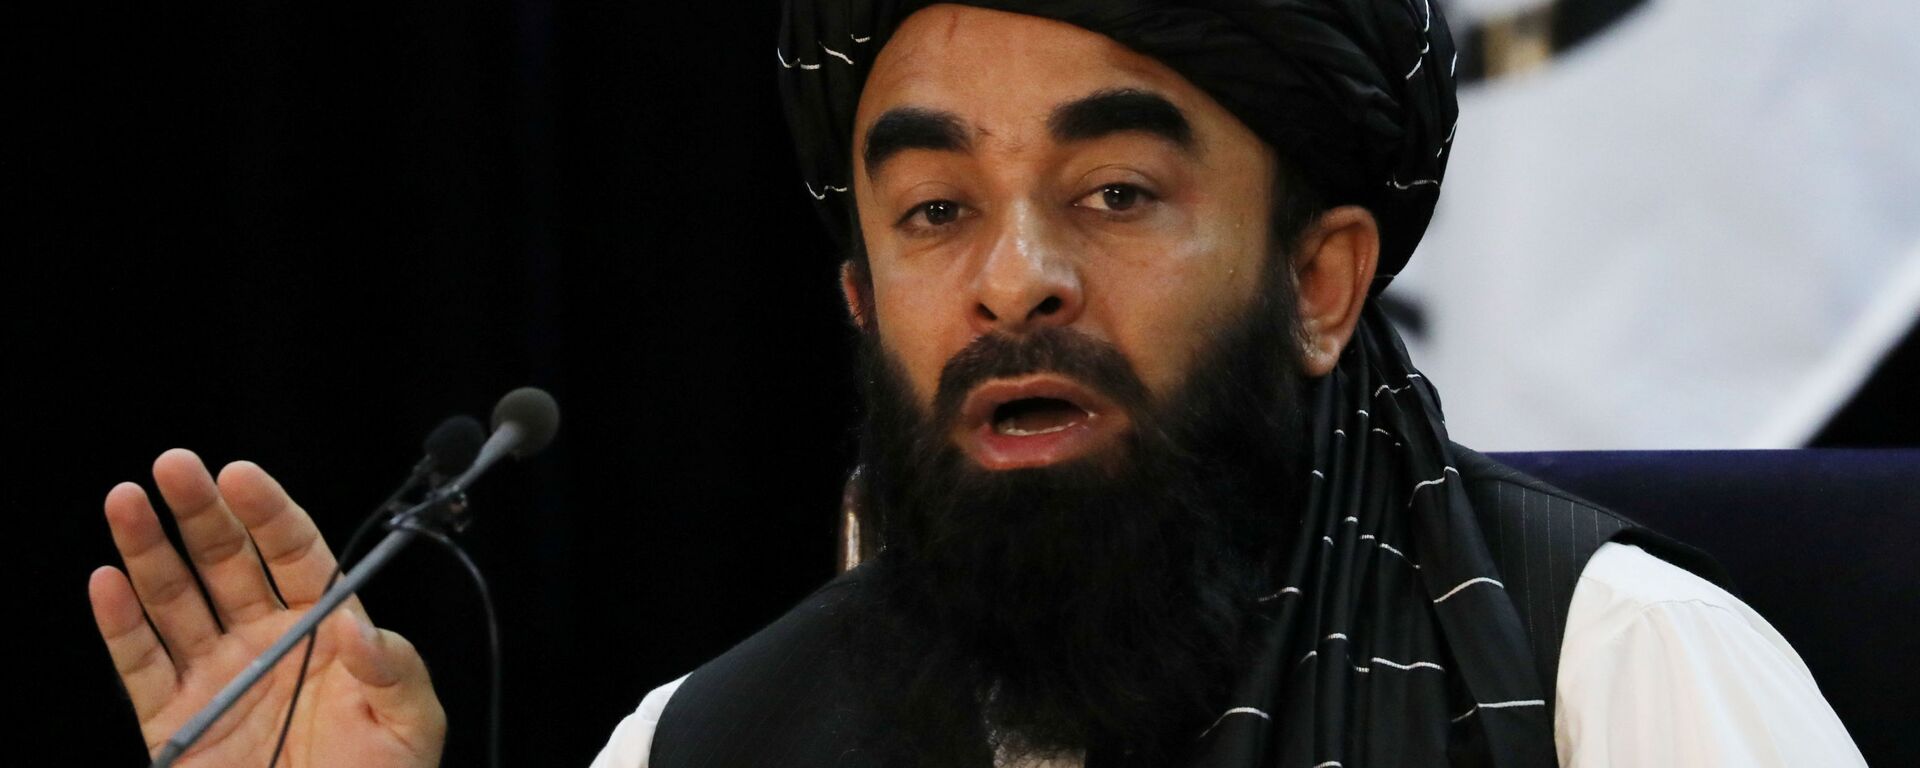 ممثل حركة طالبان (المحظورة في روسيا) ذبيح الله مجاهد في كابول، أفغانستان 6 سبتمبر 2021 - سبوتنيك عربي, 1920, 30.10.2021